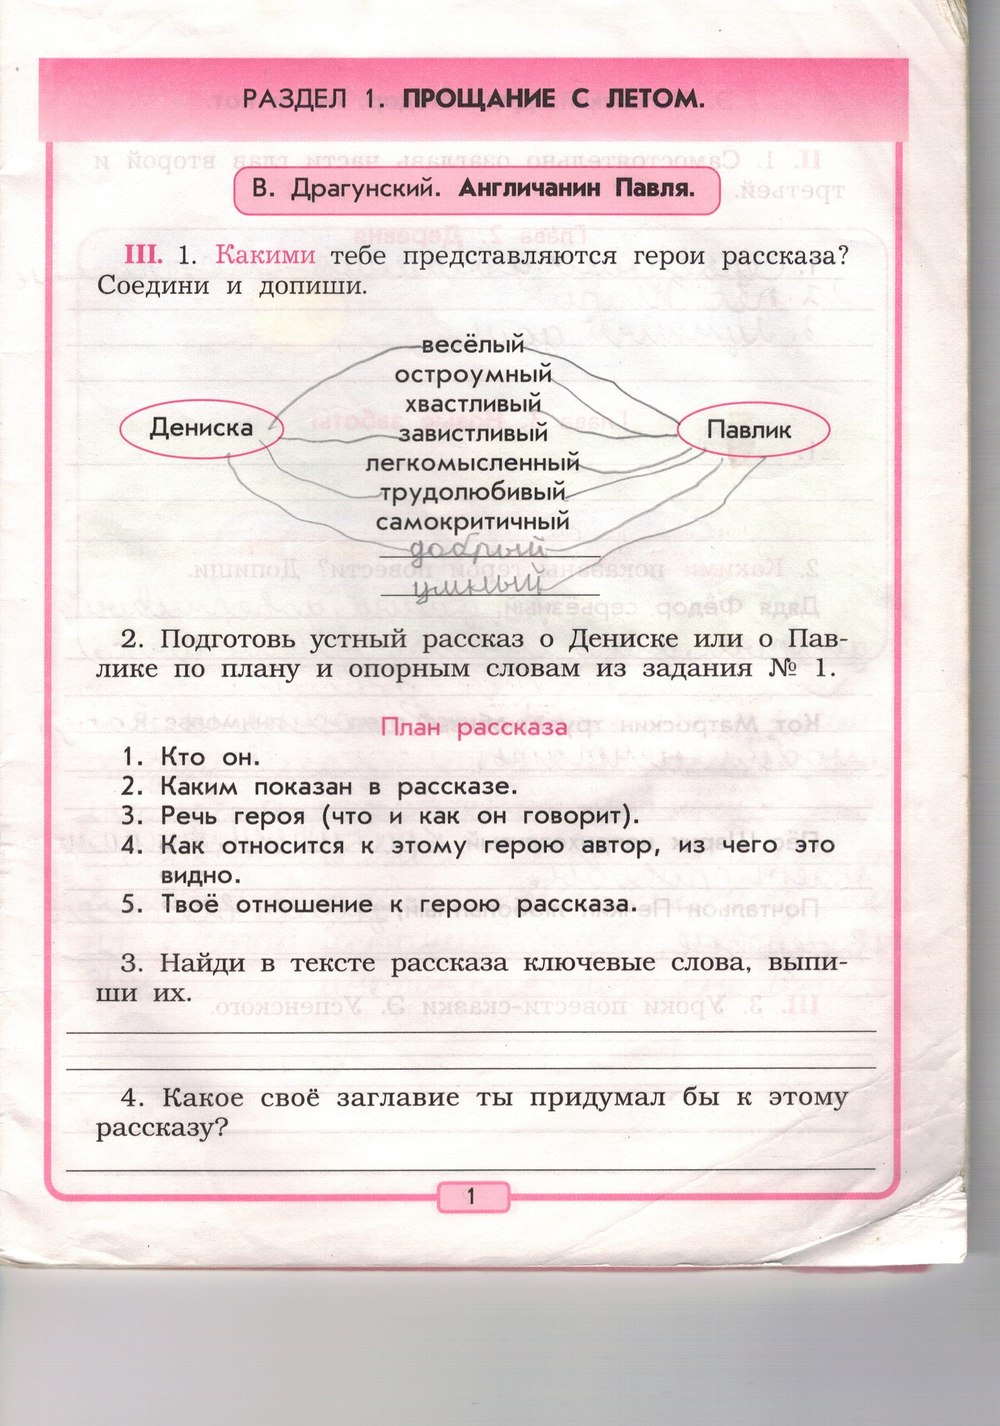 Ответы на задания к рабочей тетради по русской литературе для 3 класса бунеев